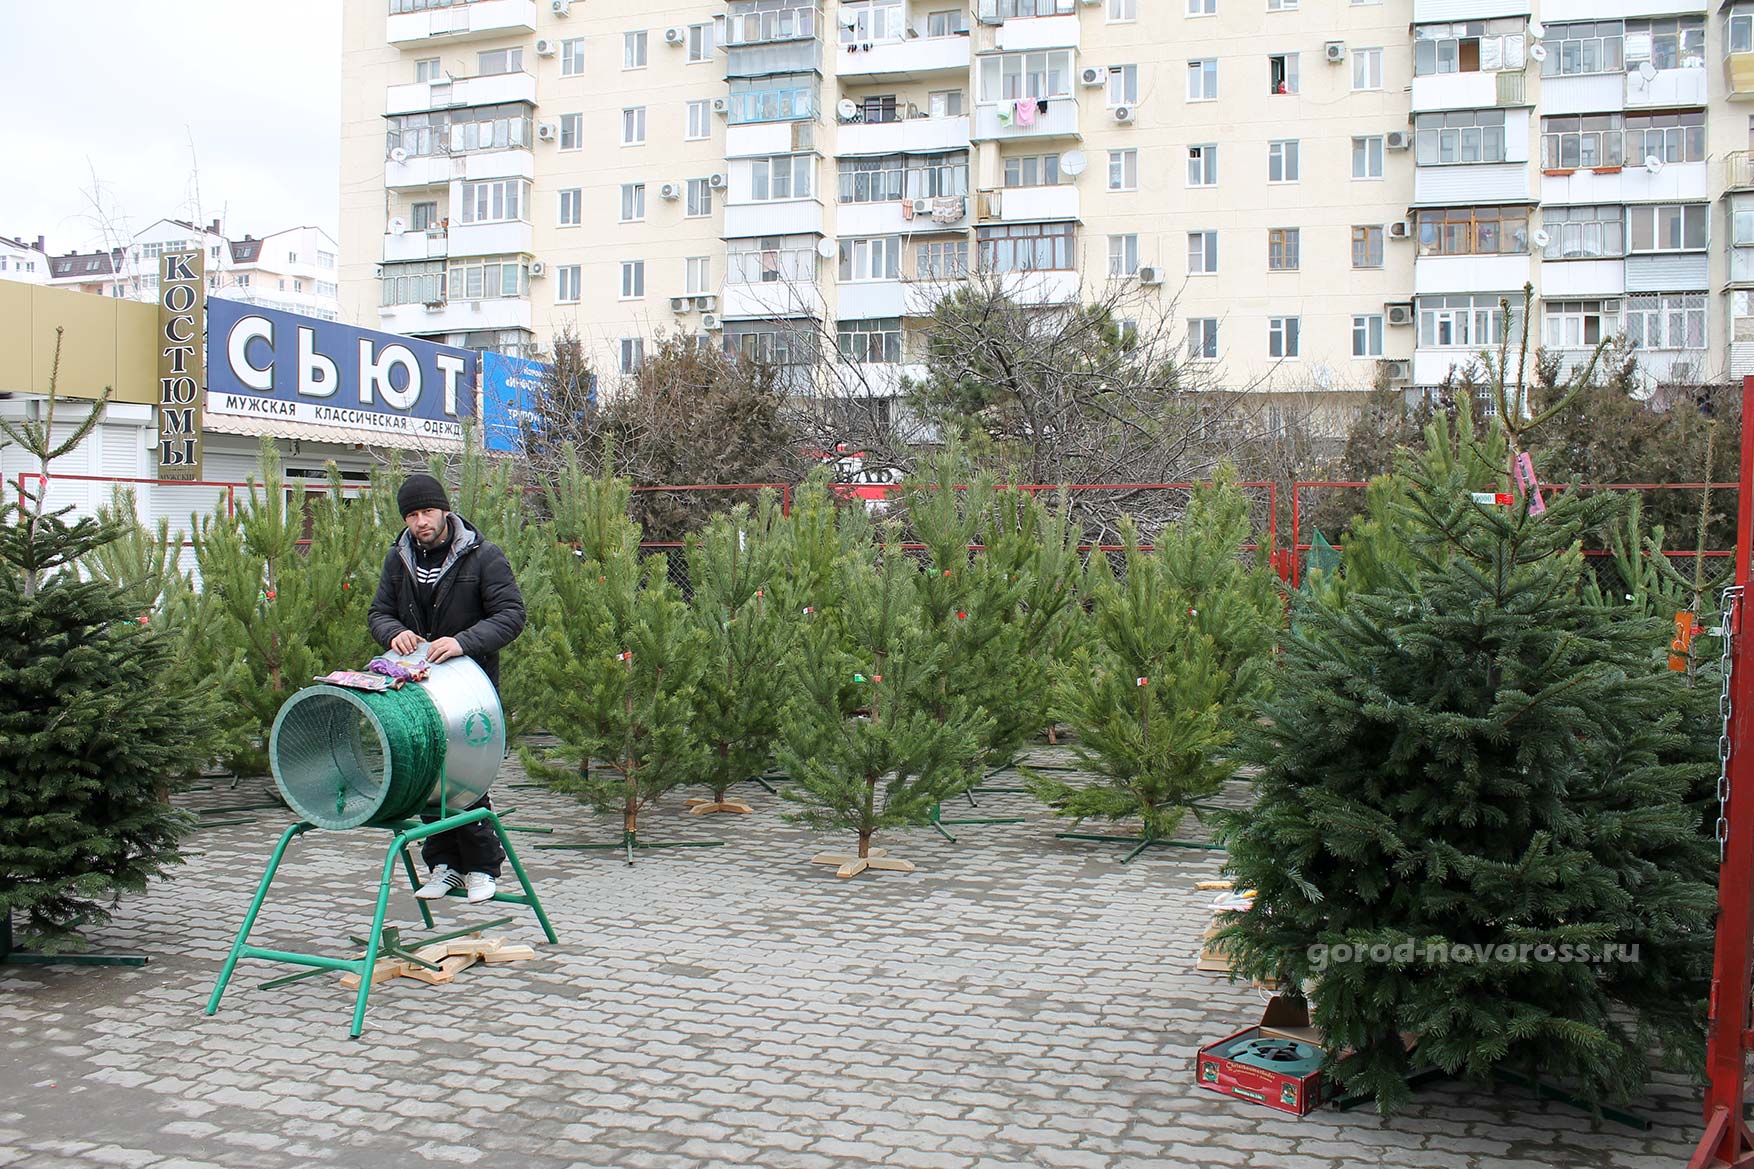 Продажа елок на Анапском шоссе в Новороссийске. 2013 г